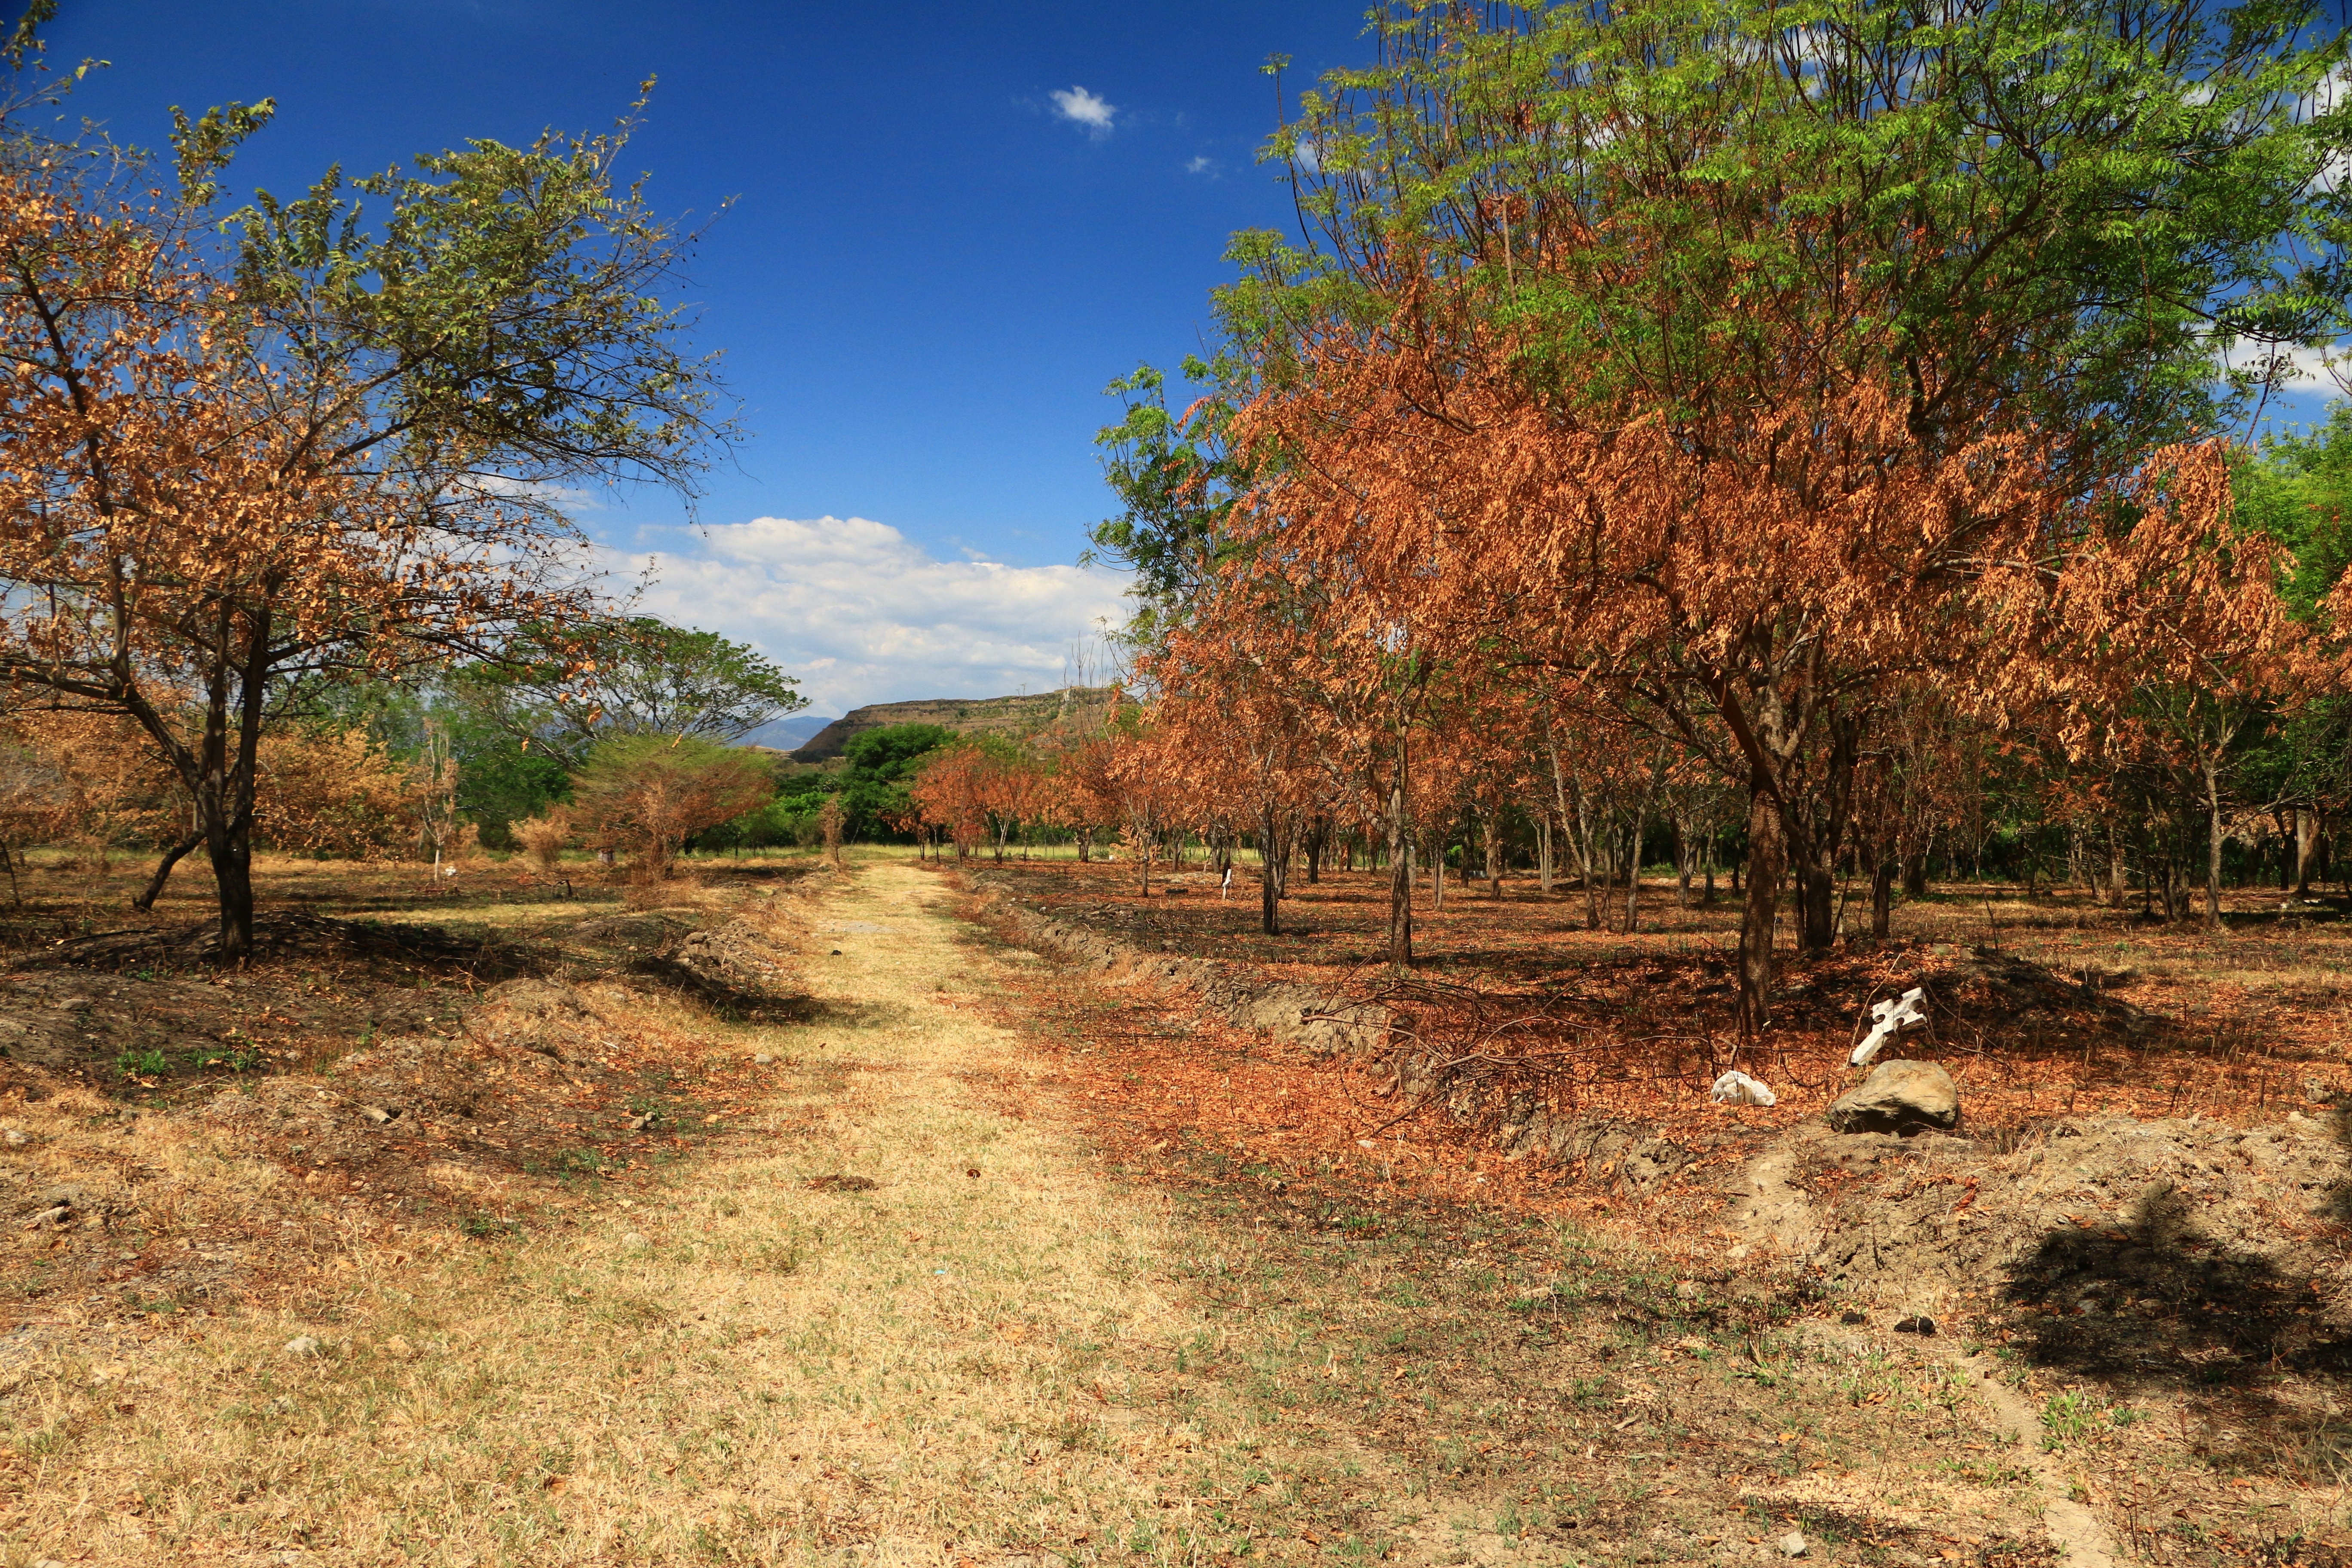 Landscape, Gunsmith, People, Tolima, tree, autumn